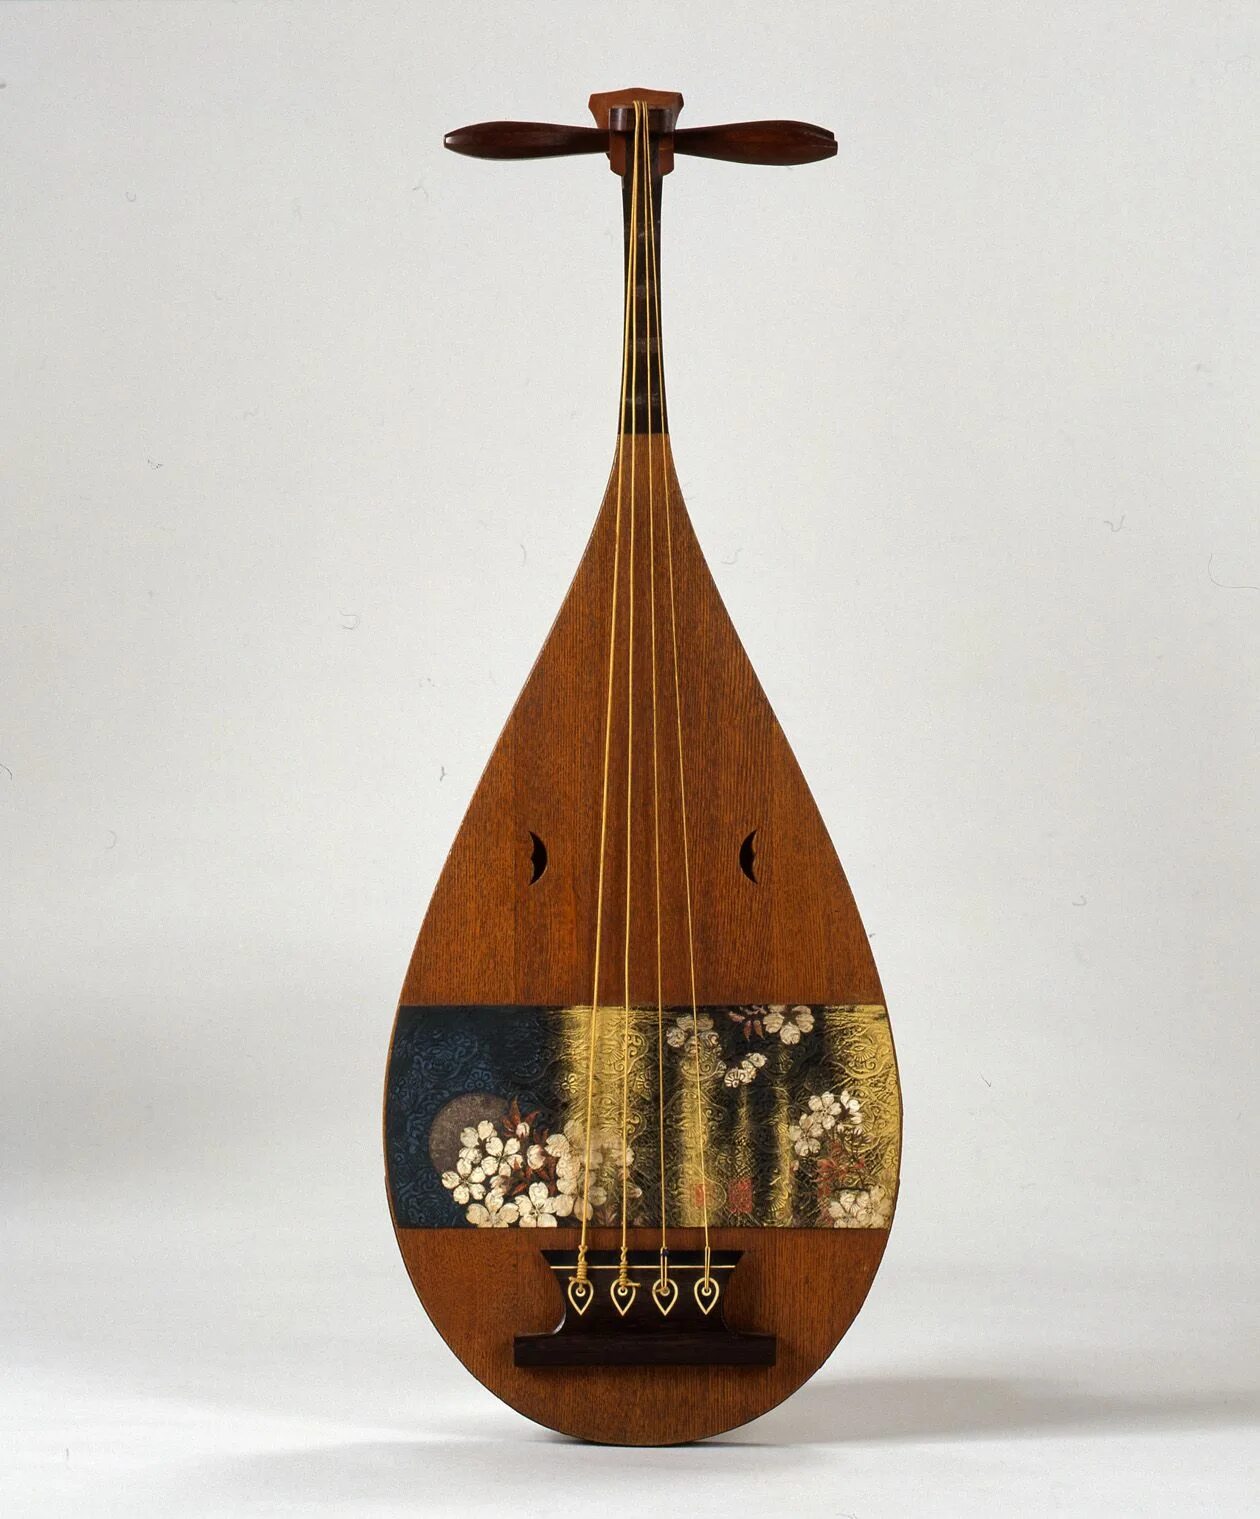 Японская трехструнная лютня с длинной шейкой. Бива музыкальный инструмент Япония. Лютня бива Япония. Национальный инструмент Японии музыкальный бива. Японский народный инструмент бива.